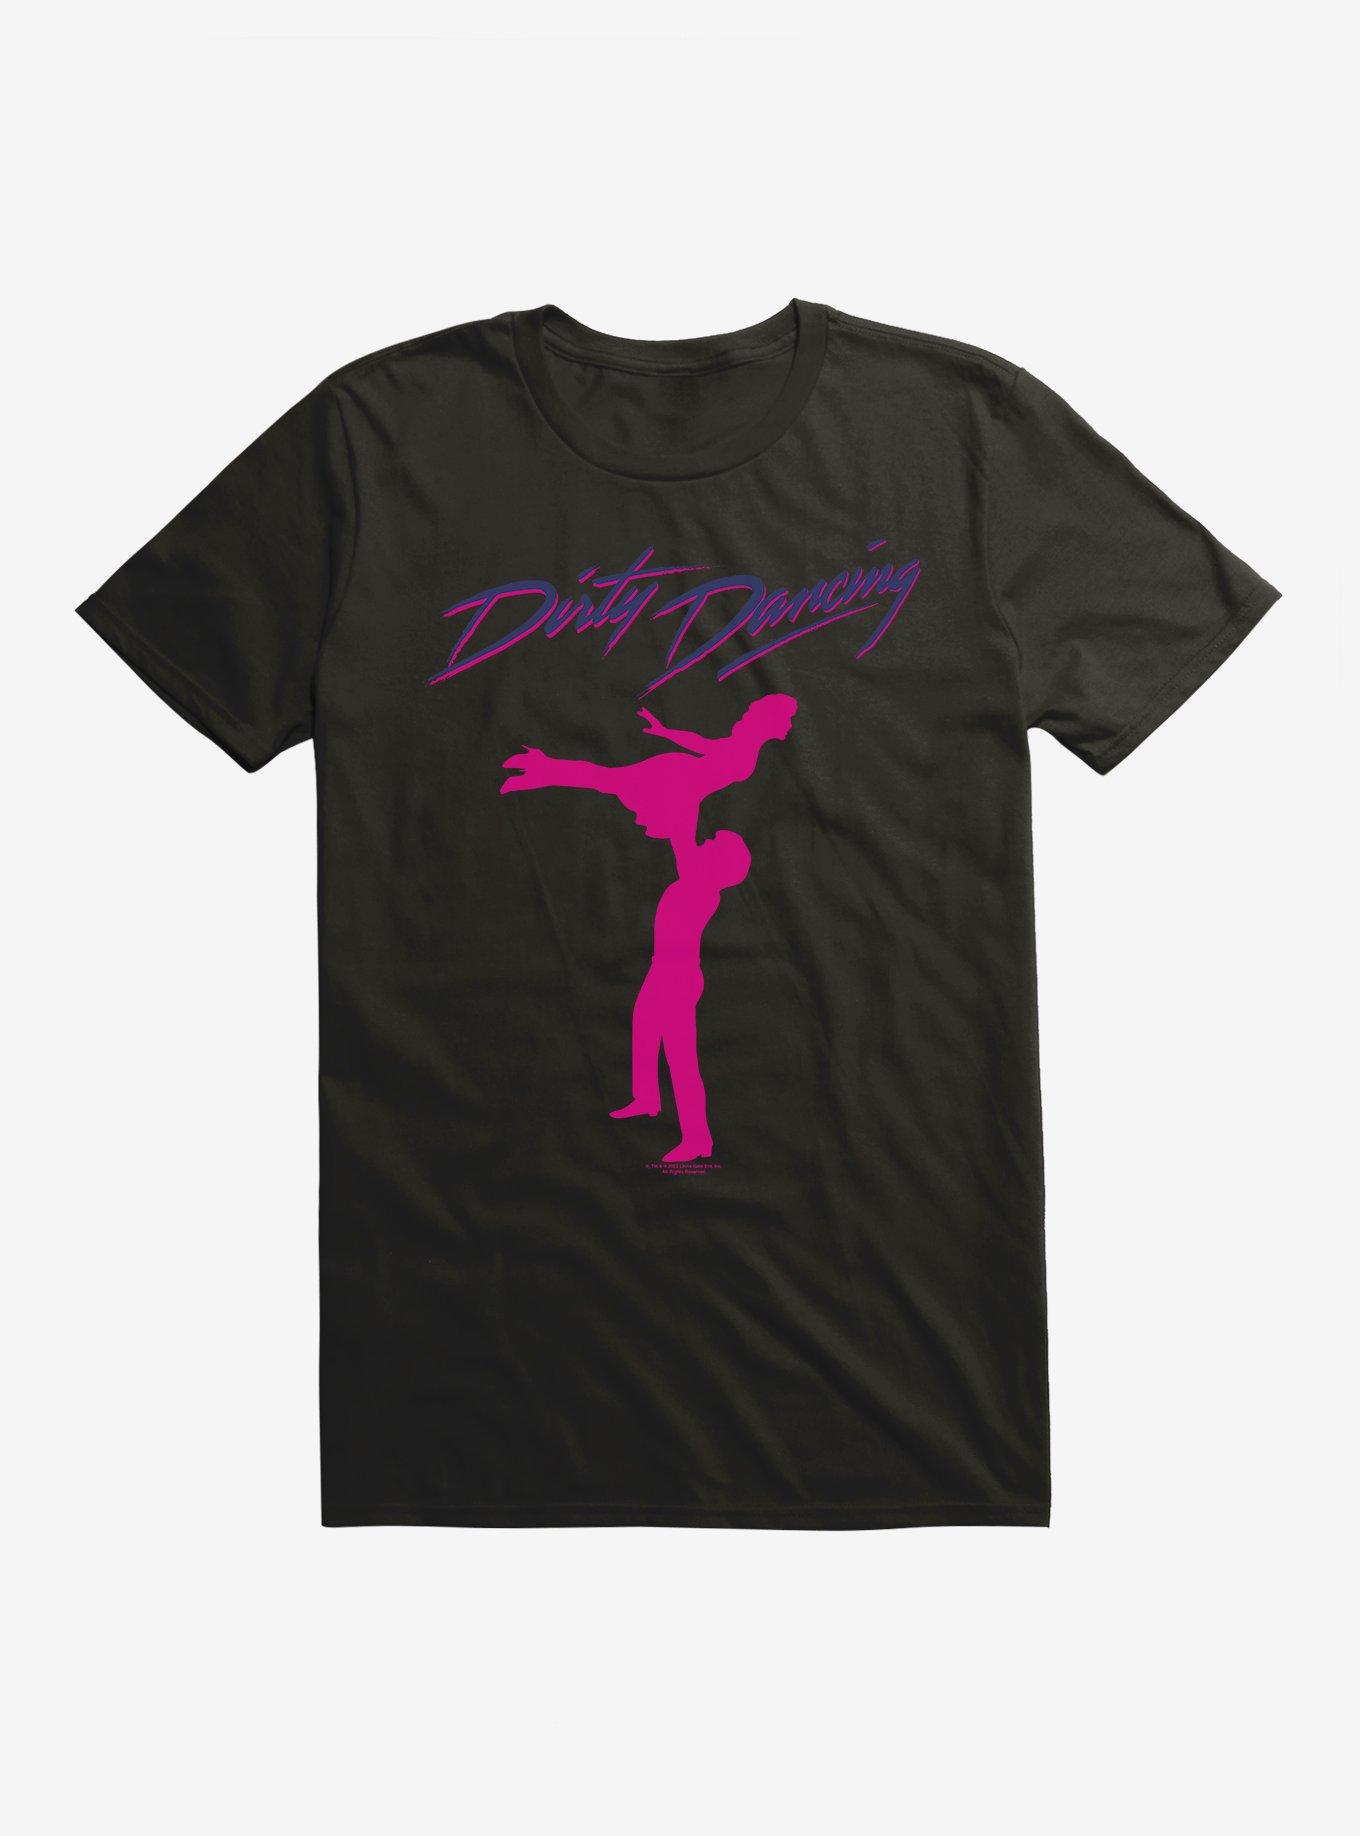 Dirty Dancing Silohouette Lift T-Shirt